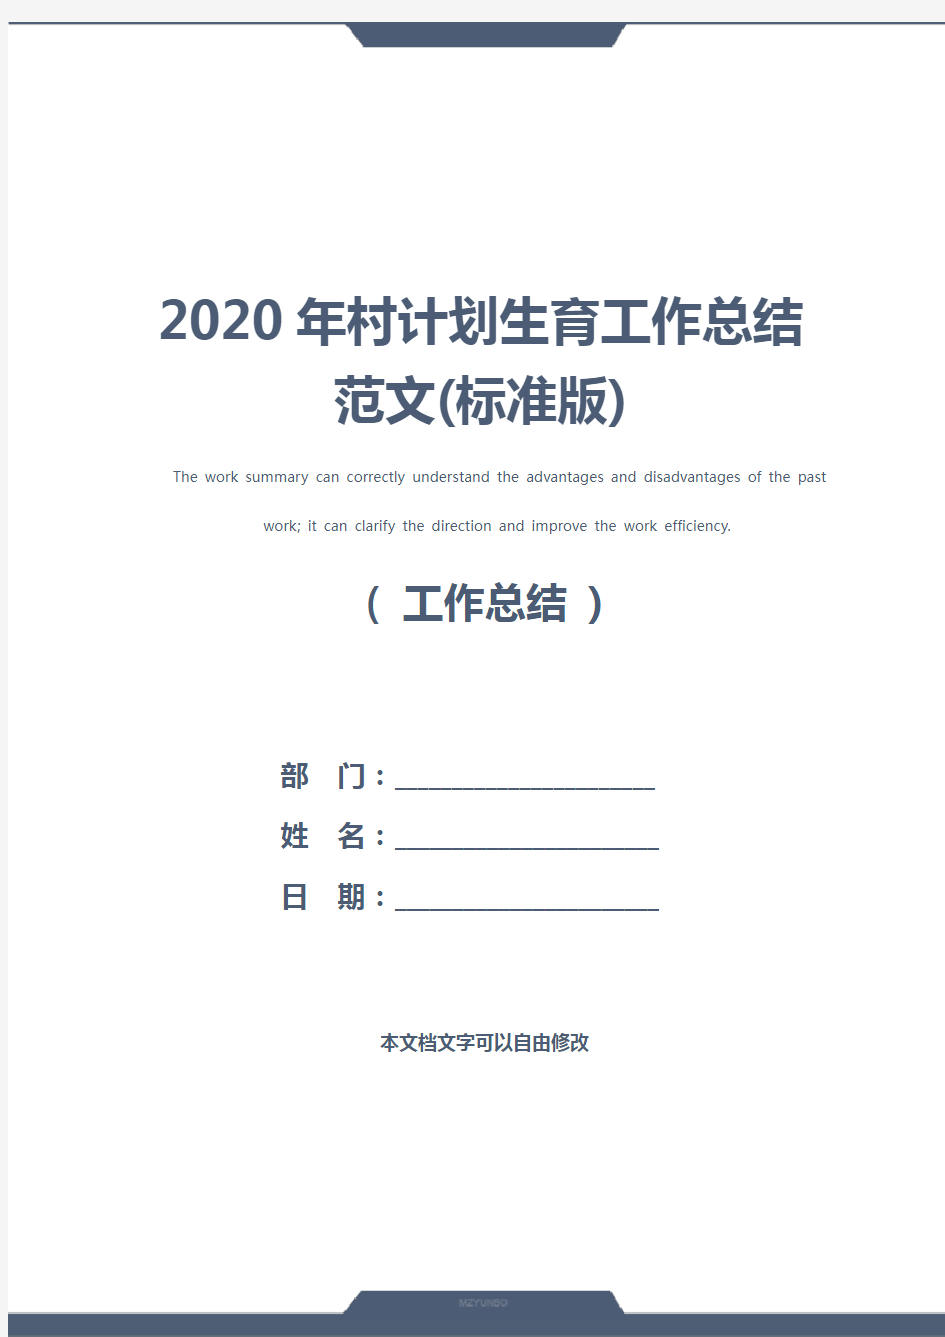 2020年村计划生育工作总结范文(标准版)